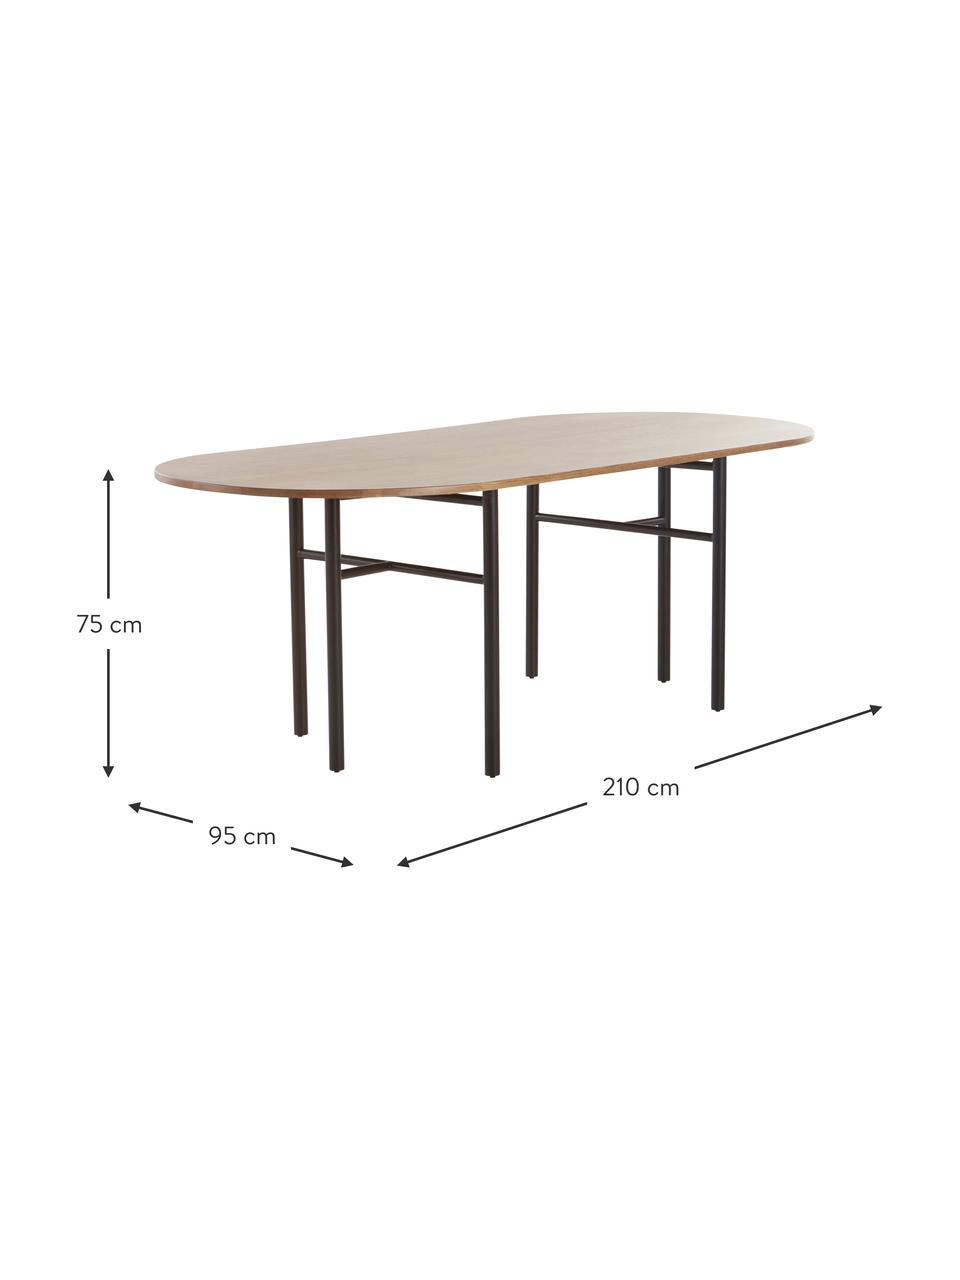 Oválný jídelní stůl z mangového dřeva Vejby, 210 x 95 cm, Dubové dřevo, Š 210 cm, V 75 cm